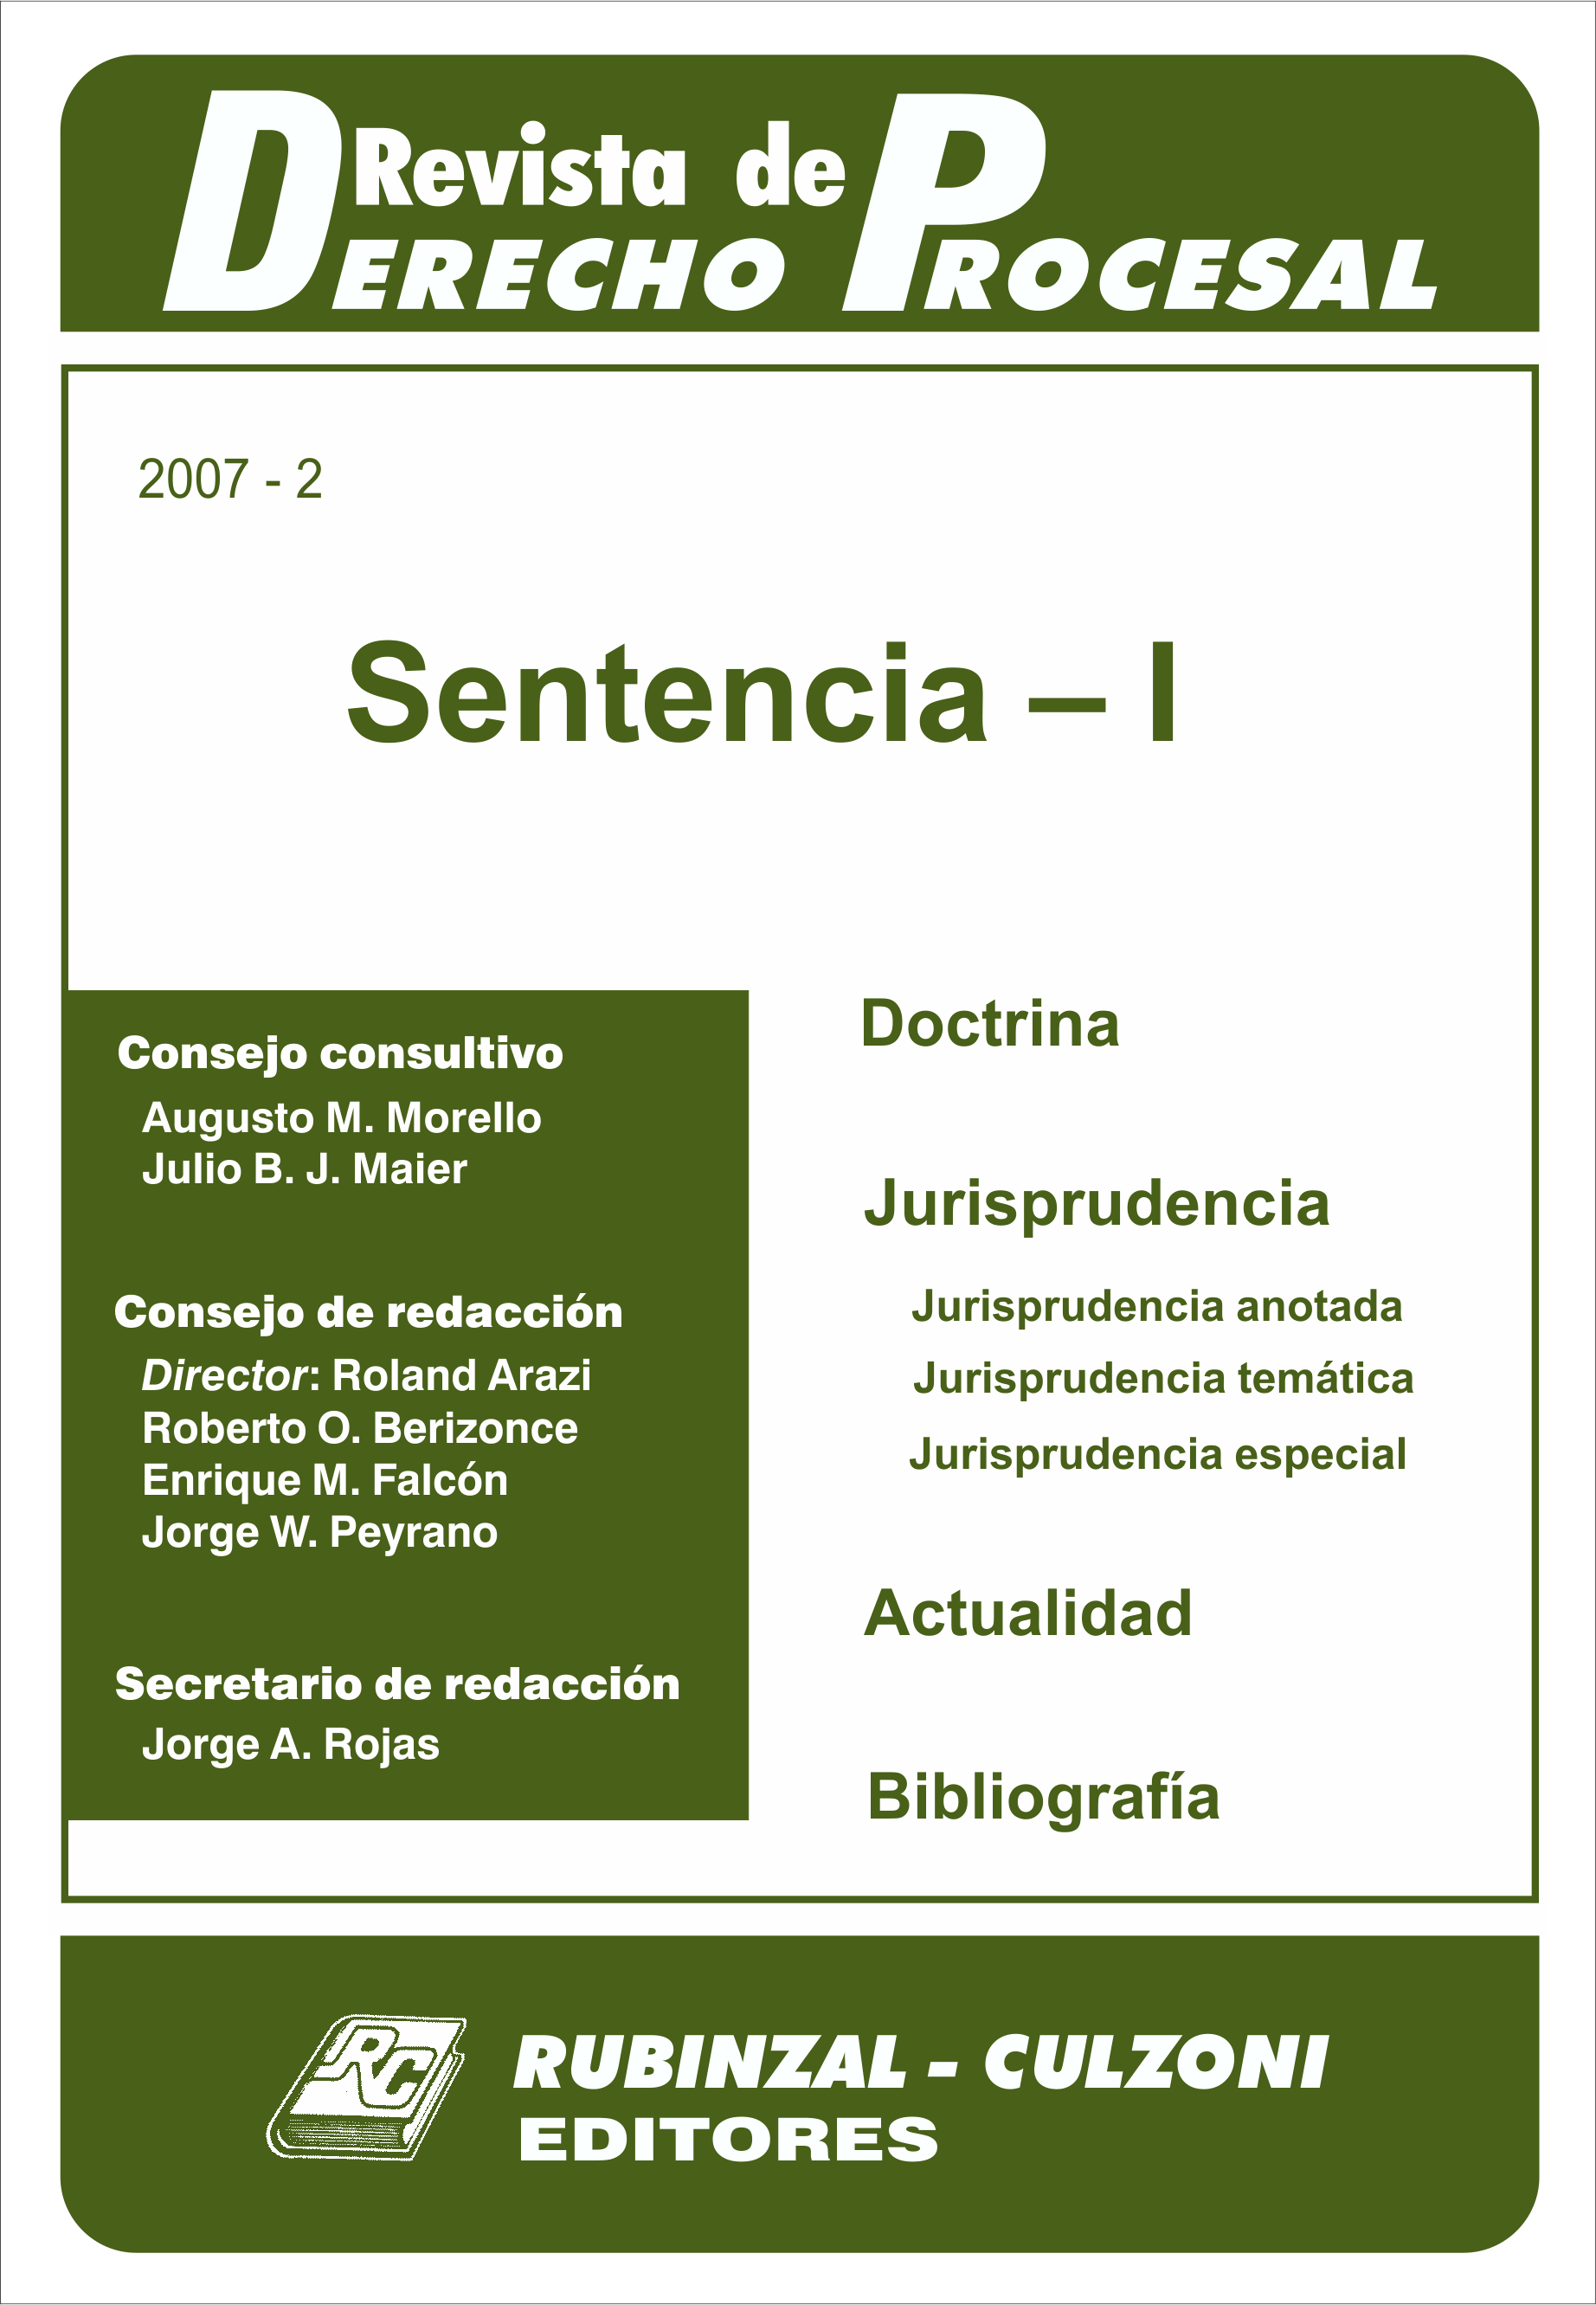 Revista de Derecho Procesal - Sentencia - I